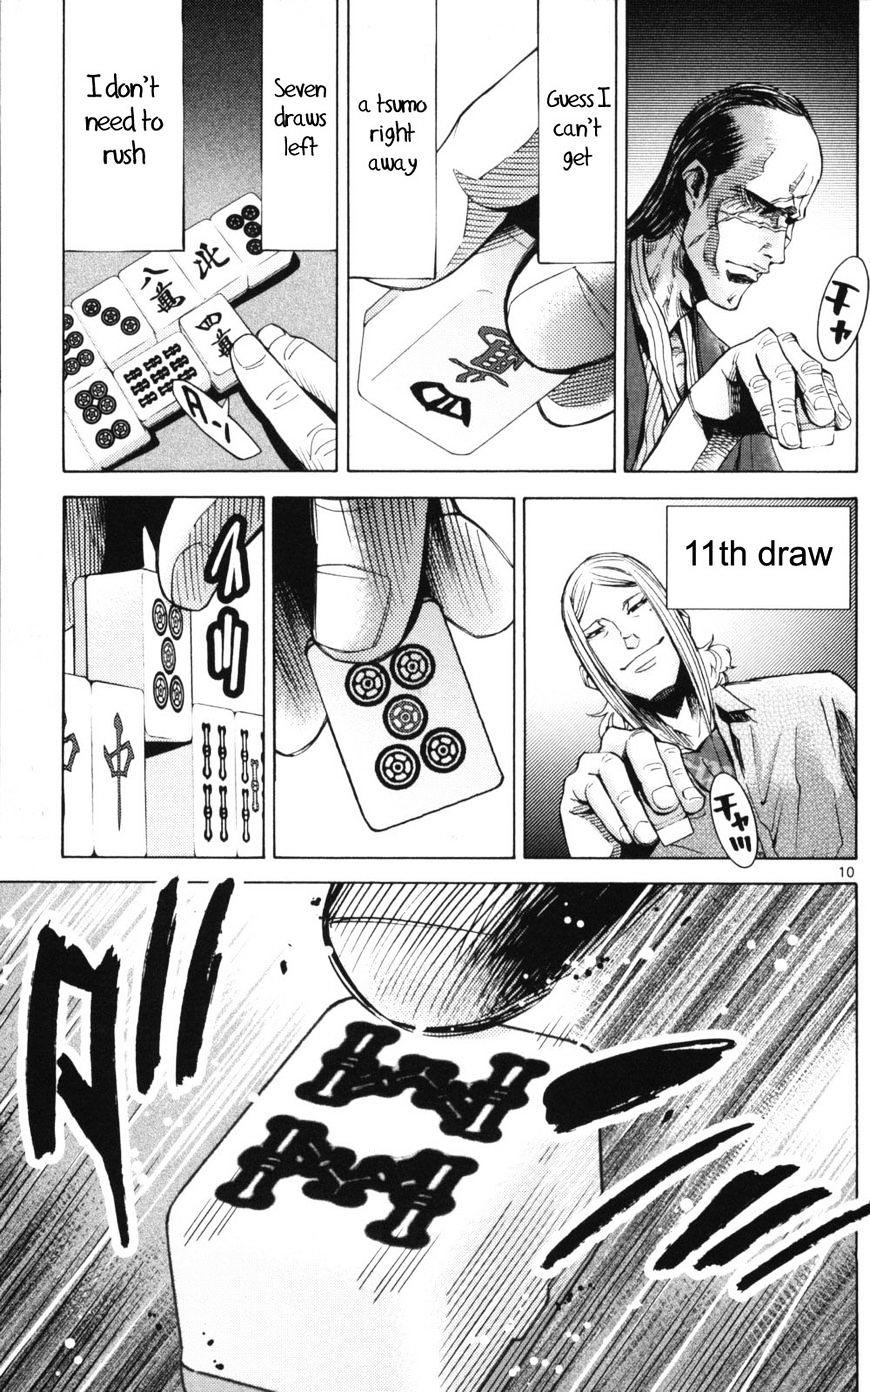 Imawa No Kuni No Alice Chapter 51.1 : Side Story 6 - King Of Diamonds (1) page 10 - Mangakakalot